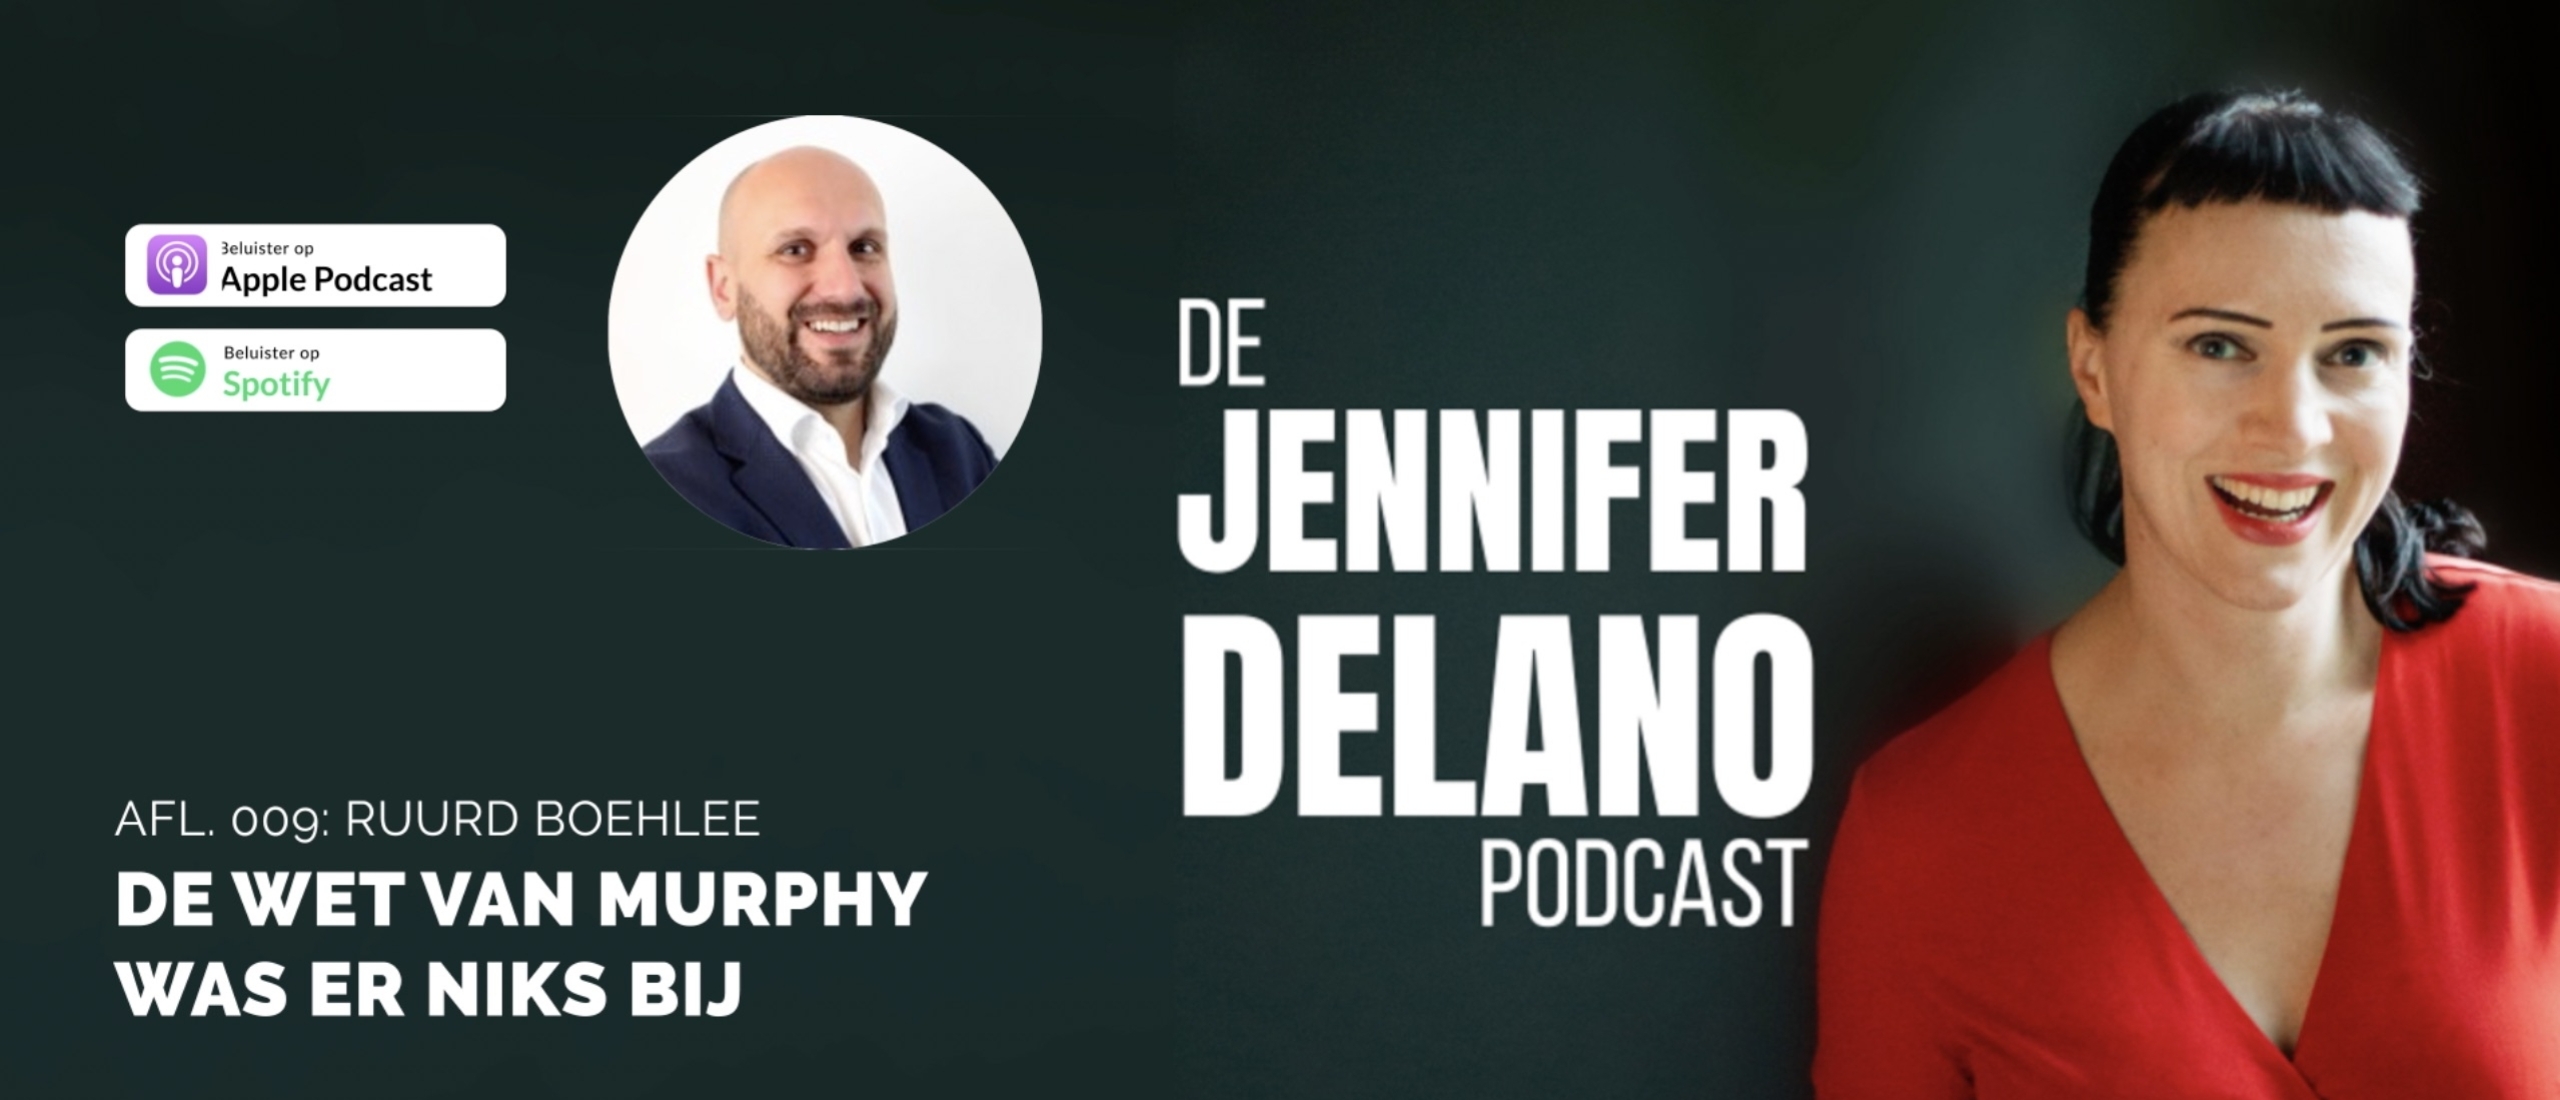 De Wet van Murphy was er niks bij - De Jennifer Delano Podcast Afl. 009 met Ruurd Boehlee